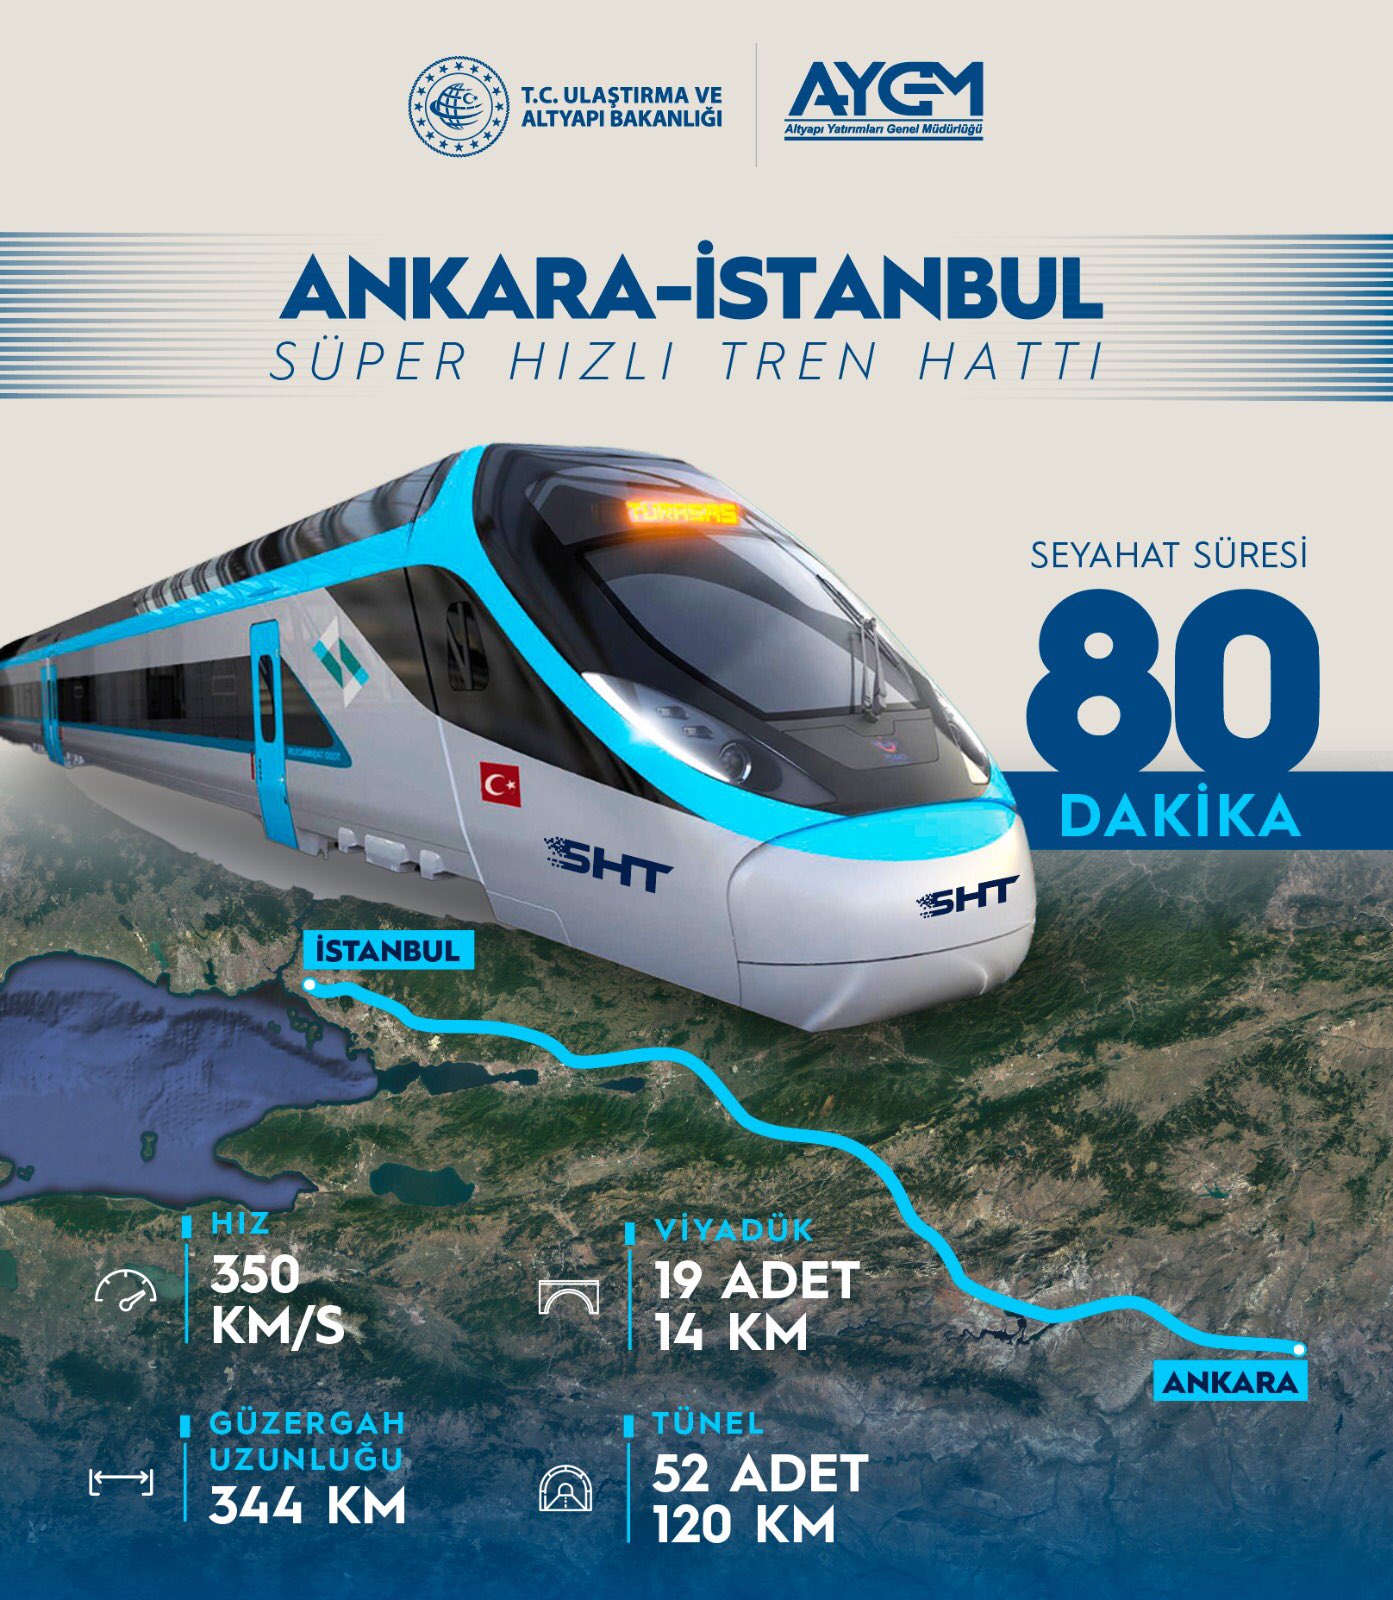 AYGM on X: "Türkiyemize süper hızlı yeni projemiz! Ankara ile İstanbul arası seyahat süresini 80 dk'ya düşürecek Ankara-İstanbul Süper Hızlı Tren Hattı! Hayat #UlaşıncaBaşlar💫 https://t.co/b7Wwrw2E2M" / X